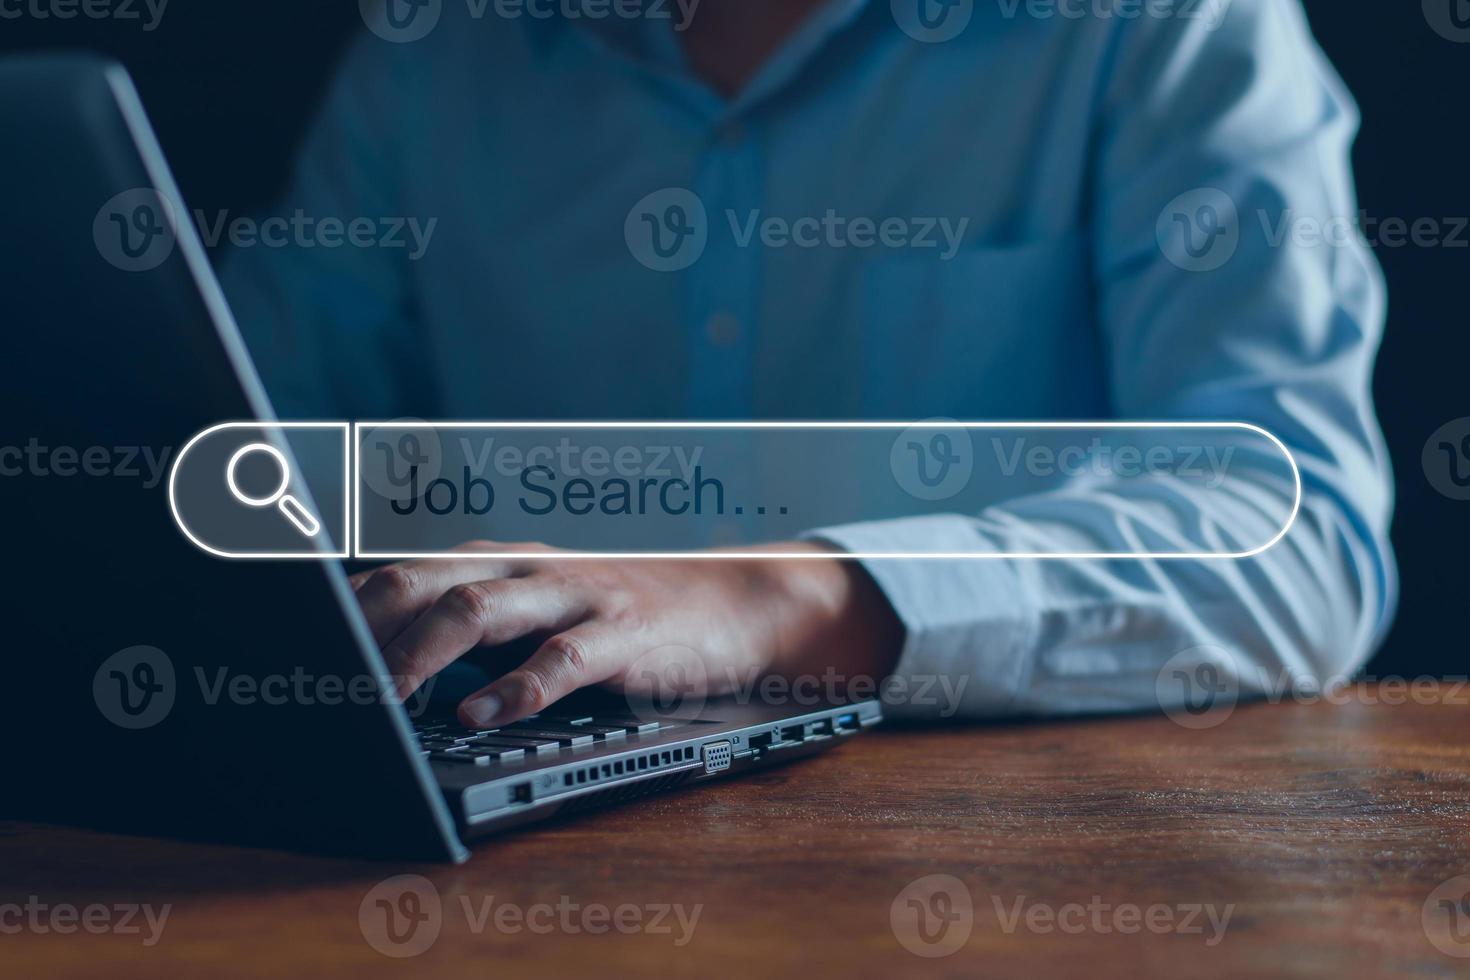 optimización de motores de búsqueda de tecnología de búsqueda de empleo. los empresarios buscan información laboral en bases de datos digitales, buscan trabajos, solicitan trabajos en línea, información comercial. foto